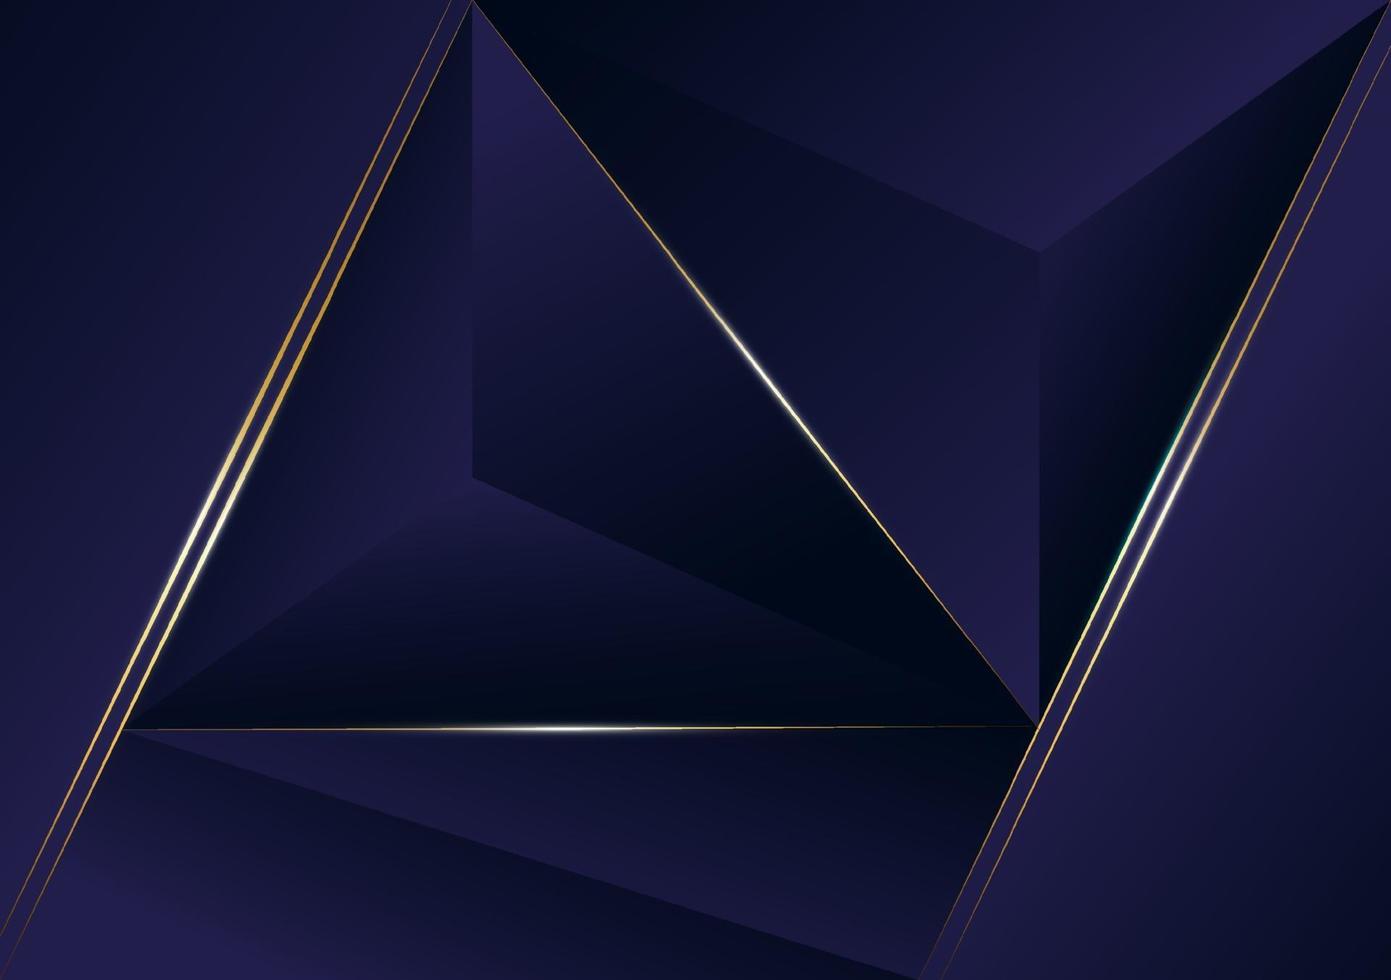 Luxus goldene Linie des abstrakten polygonalen Musters mit dunkelblauem Schablonenhintergrund. Premium-Stil für Poster, Cover, Print, Artwork. Vektorillustration vektor